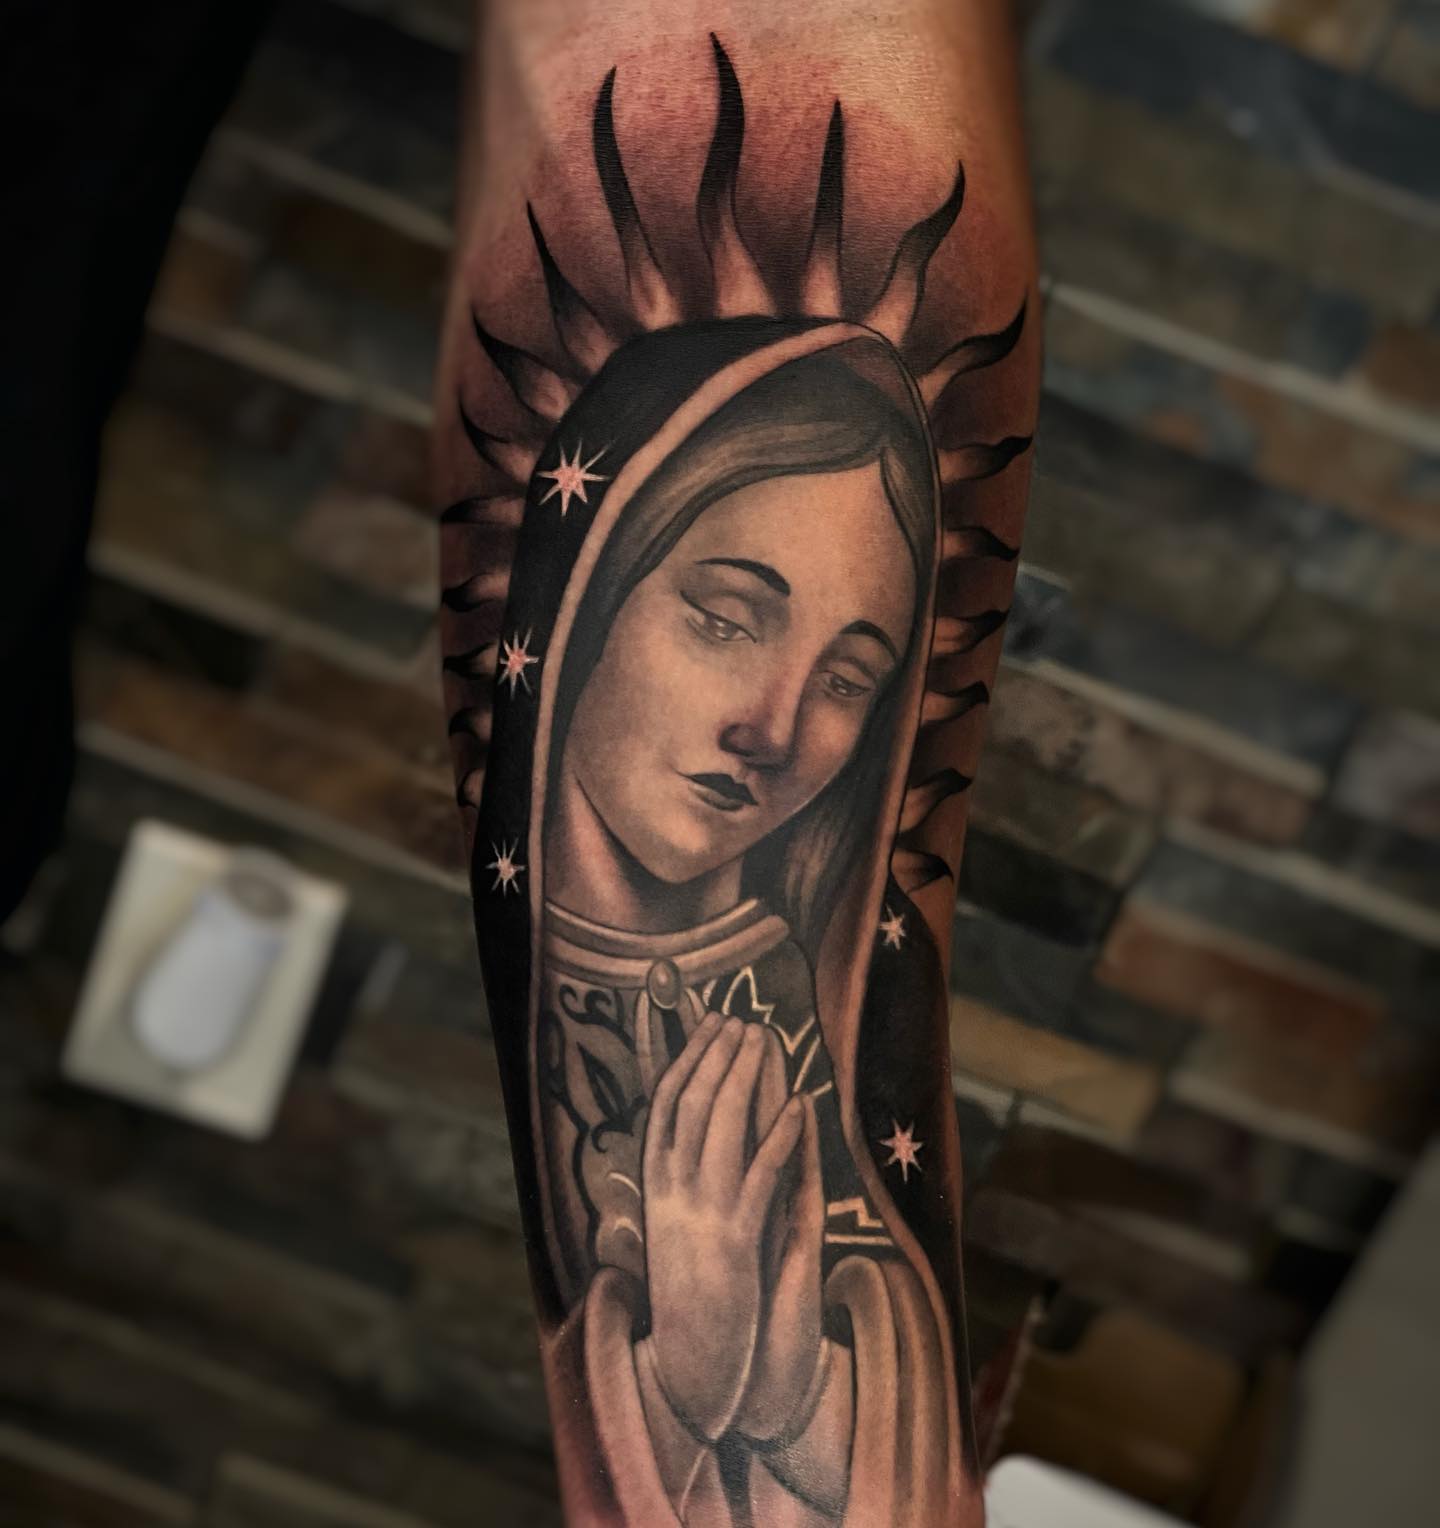 Tatuaje artístico de la Virgen de Guadalupe.